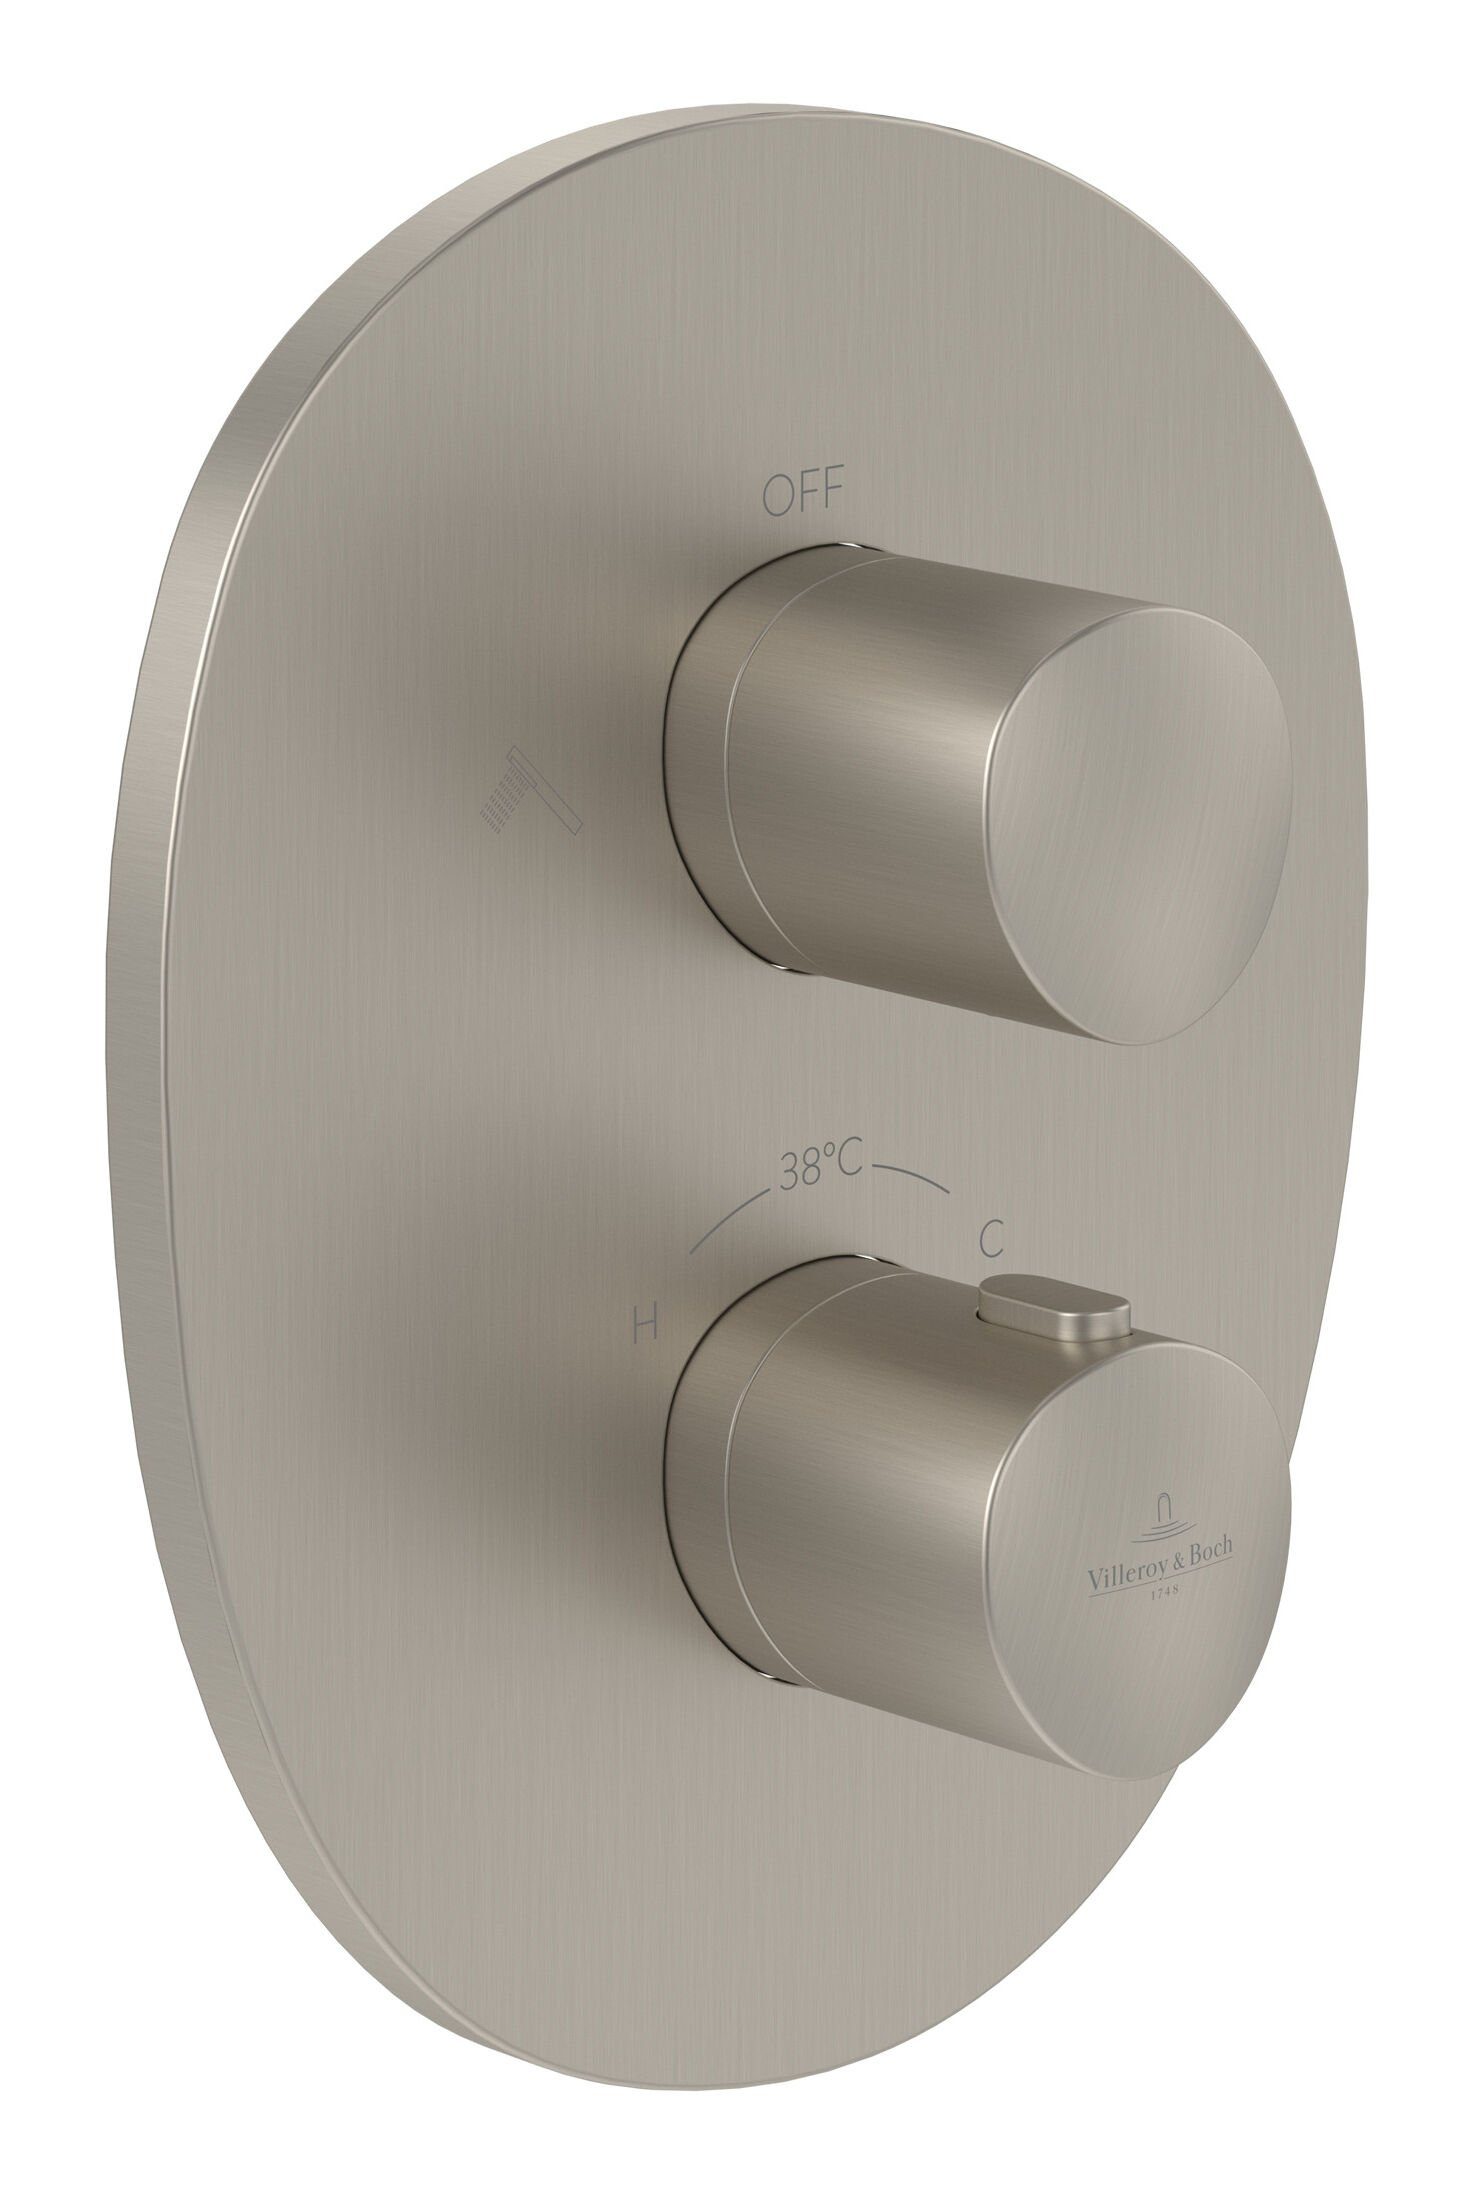 Villeroy & Boch Unterputzarmatur Antao Unterputz-Thermostat, mit Umsteller, Wandmontage - Brushed Nickel Matt